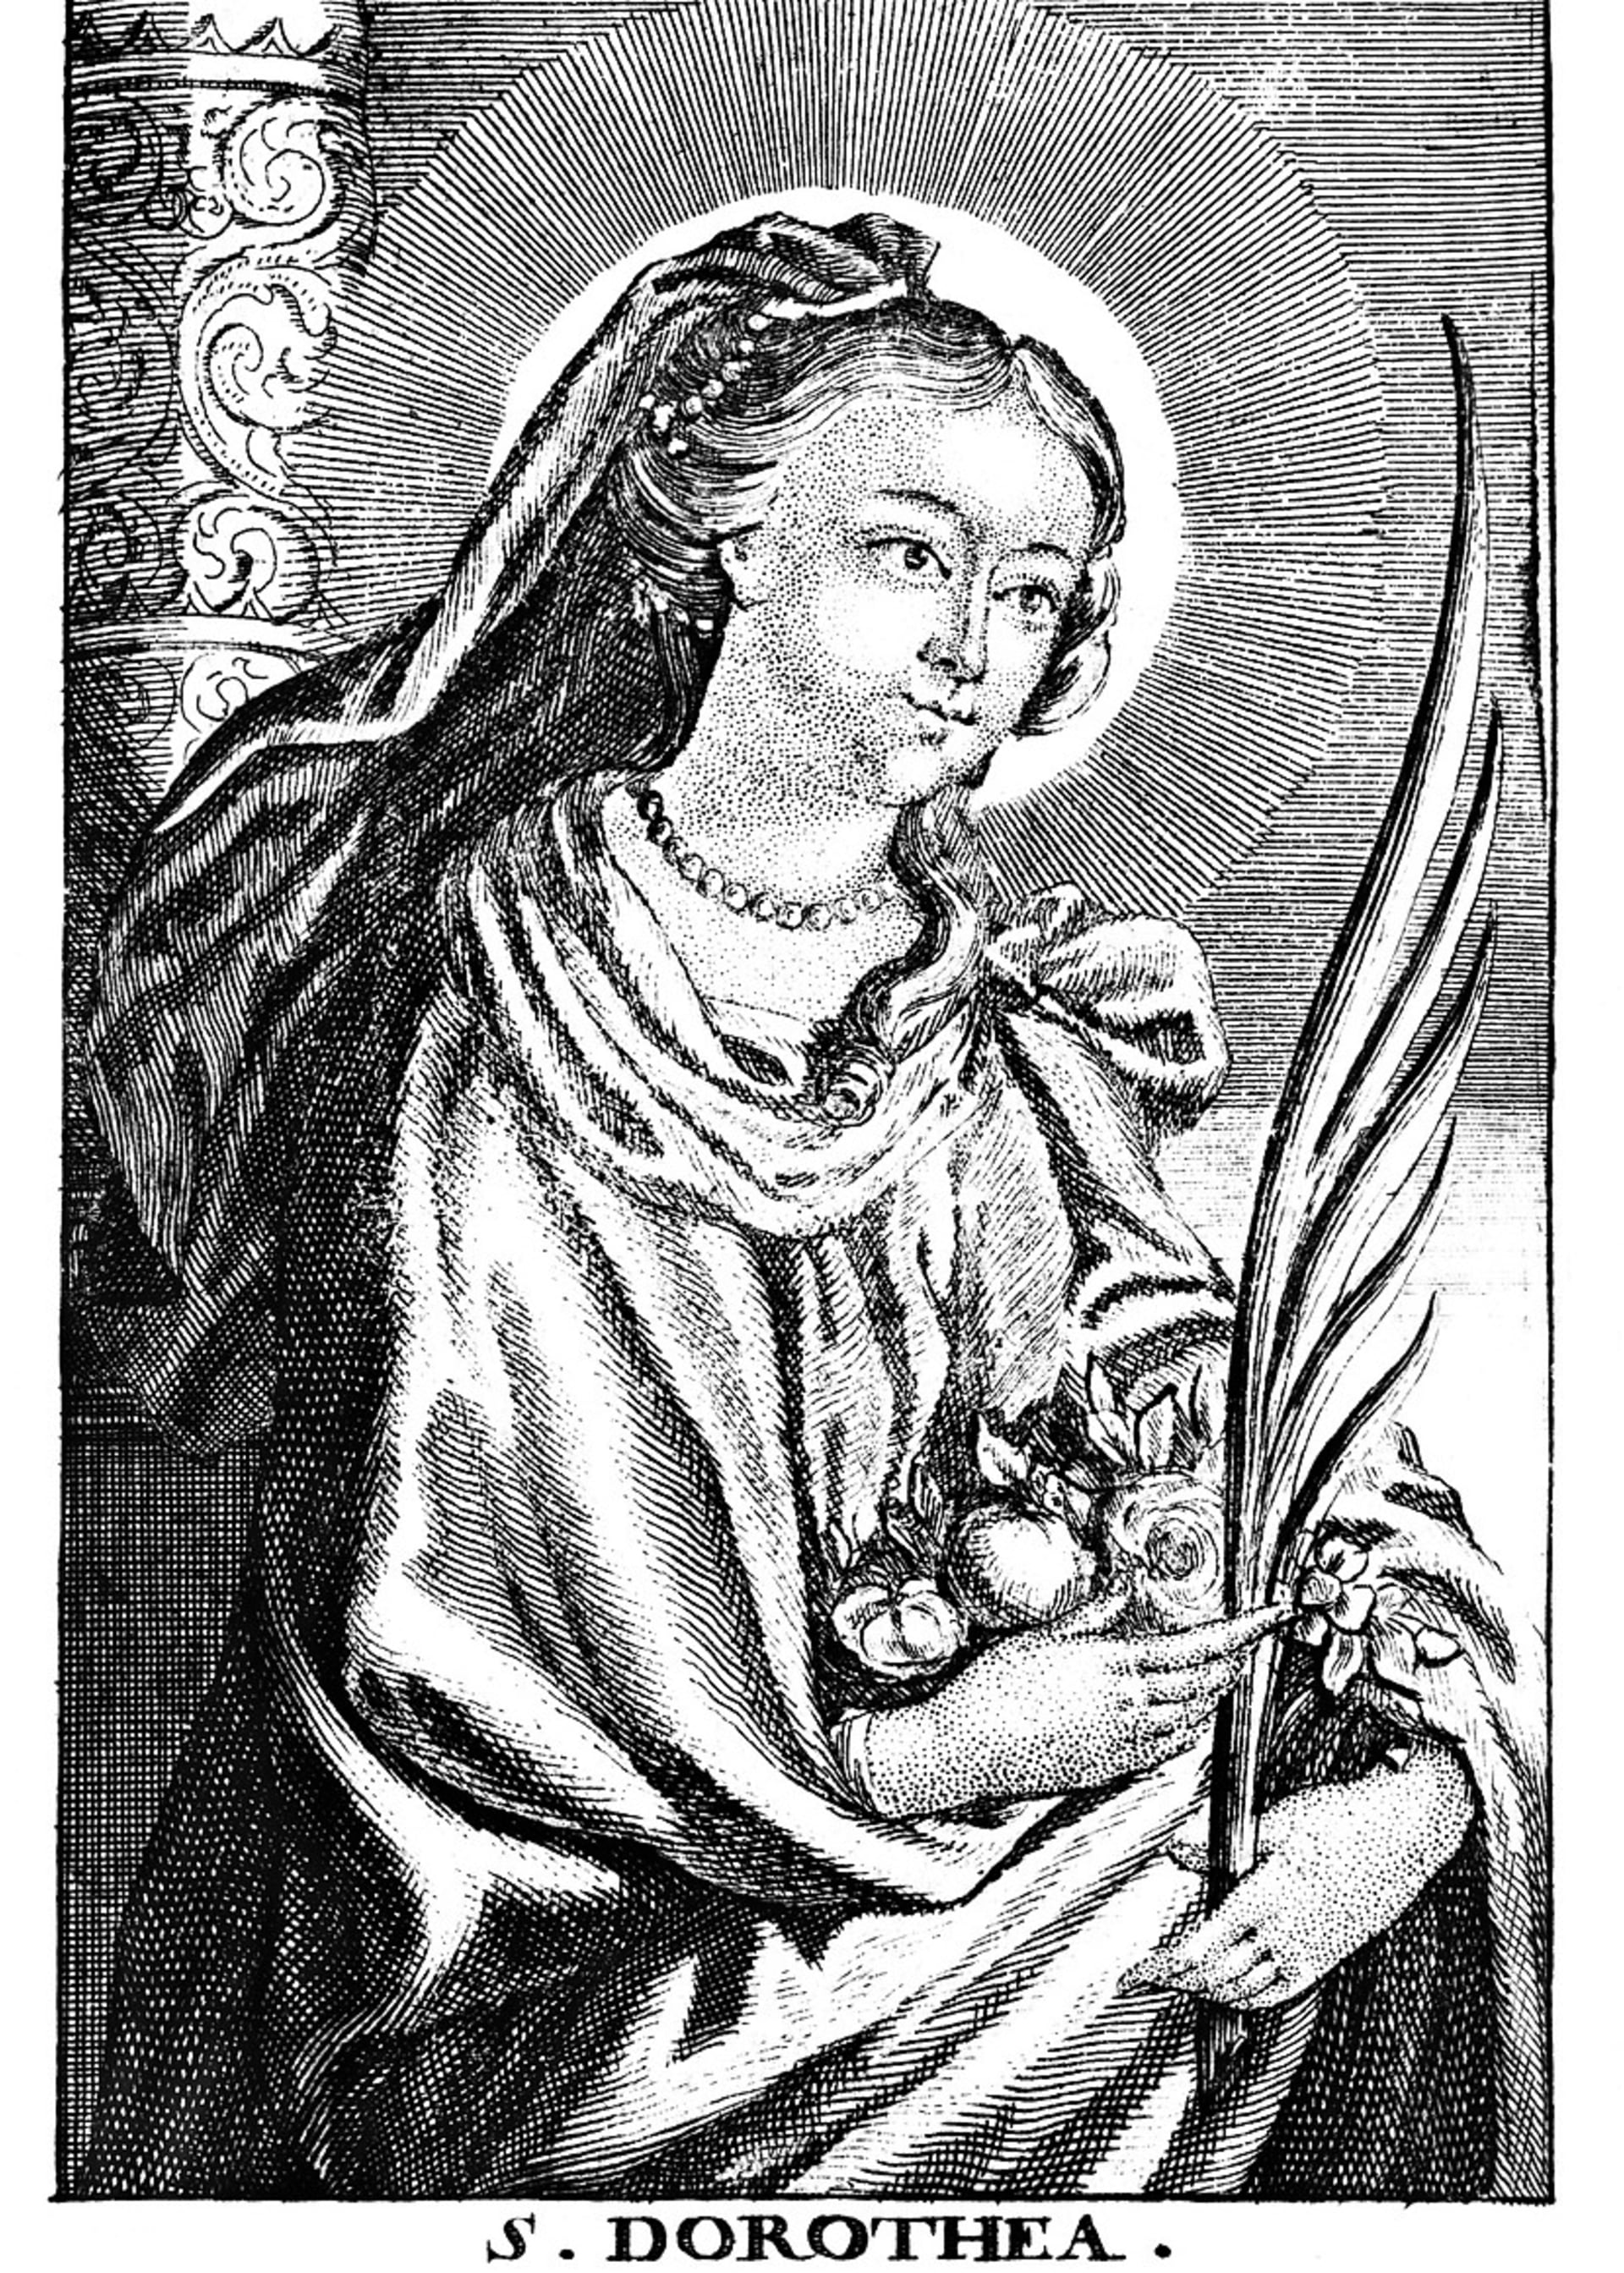 Svatá Dorota, patronka zahradníků, květinářek, nevěst a novomanželů, ochránkyně žen při porodech a v šestinedělí, při nebezpečí života a křivém obvinění žila na přelomu 3. a 4. století